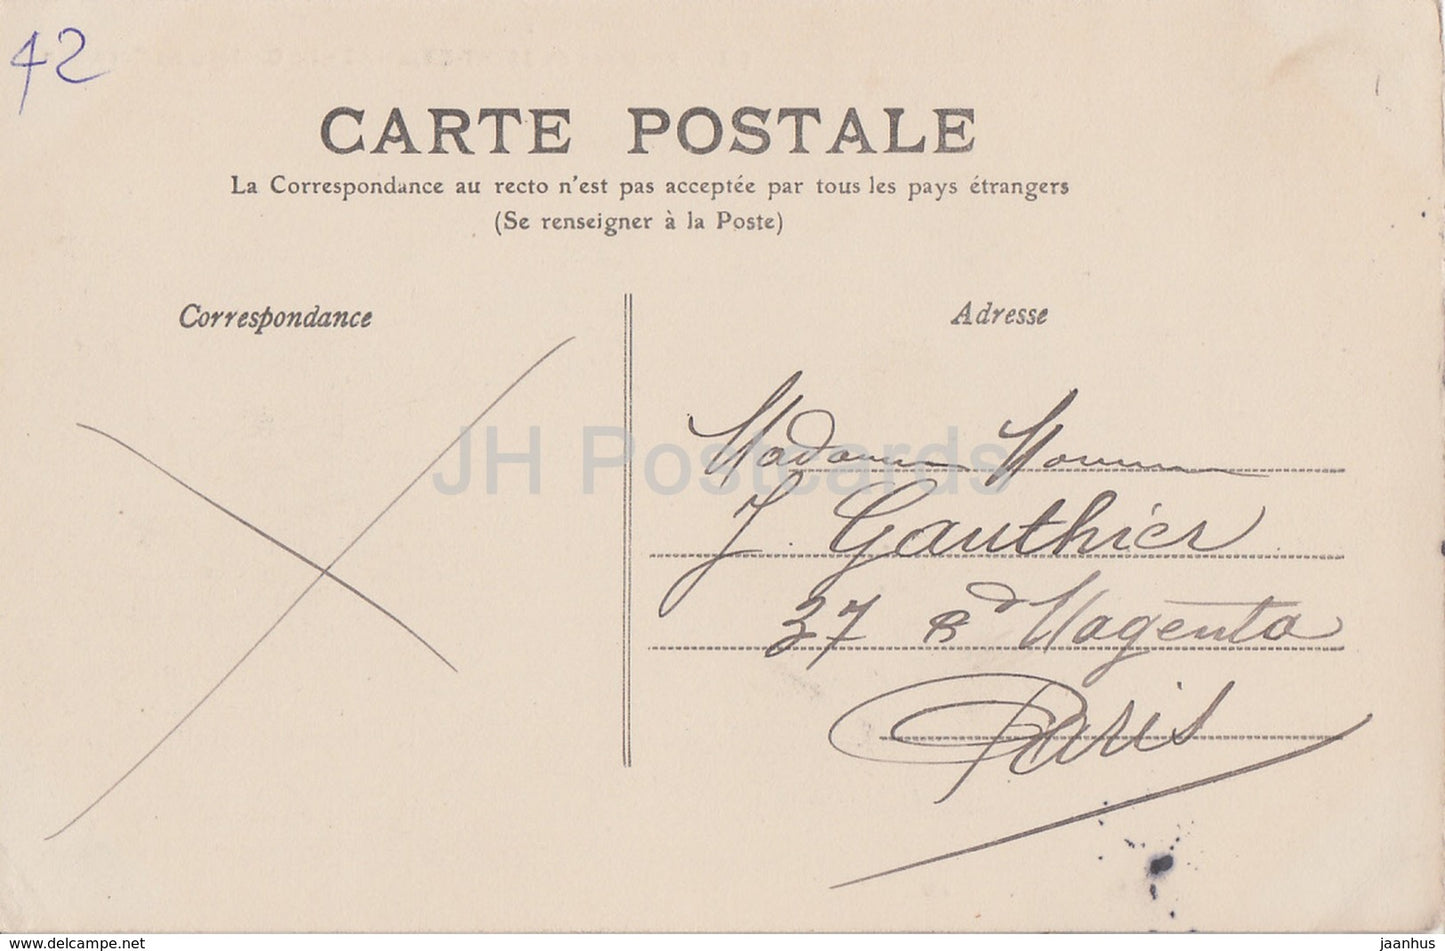 Environs de Saint Etienne - Le Chateau de Cornillon - castle - 85 - old postcard - 1901 - France - used